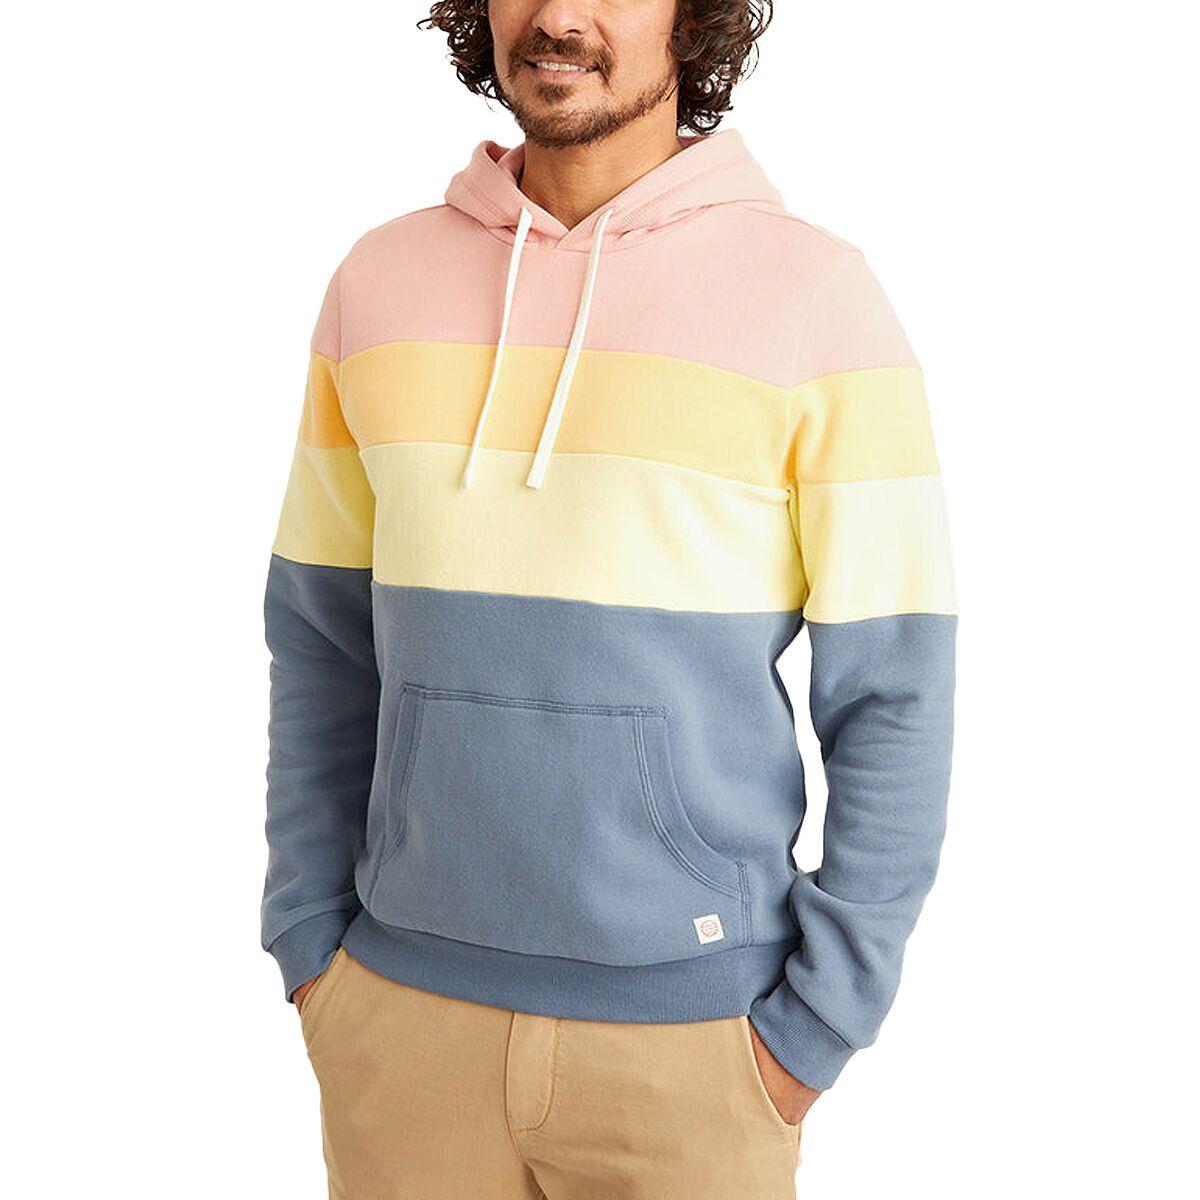 Men's Quilted Sweatshirt, Pullover Hoodie, Colorblock